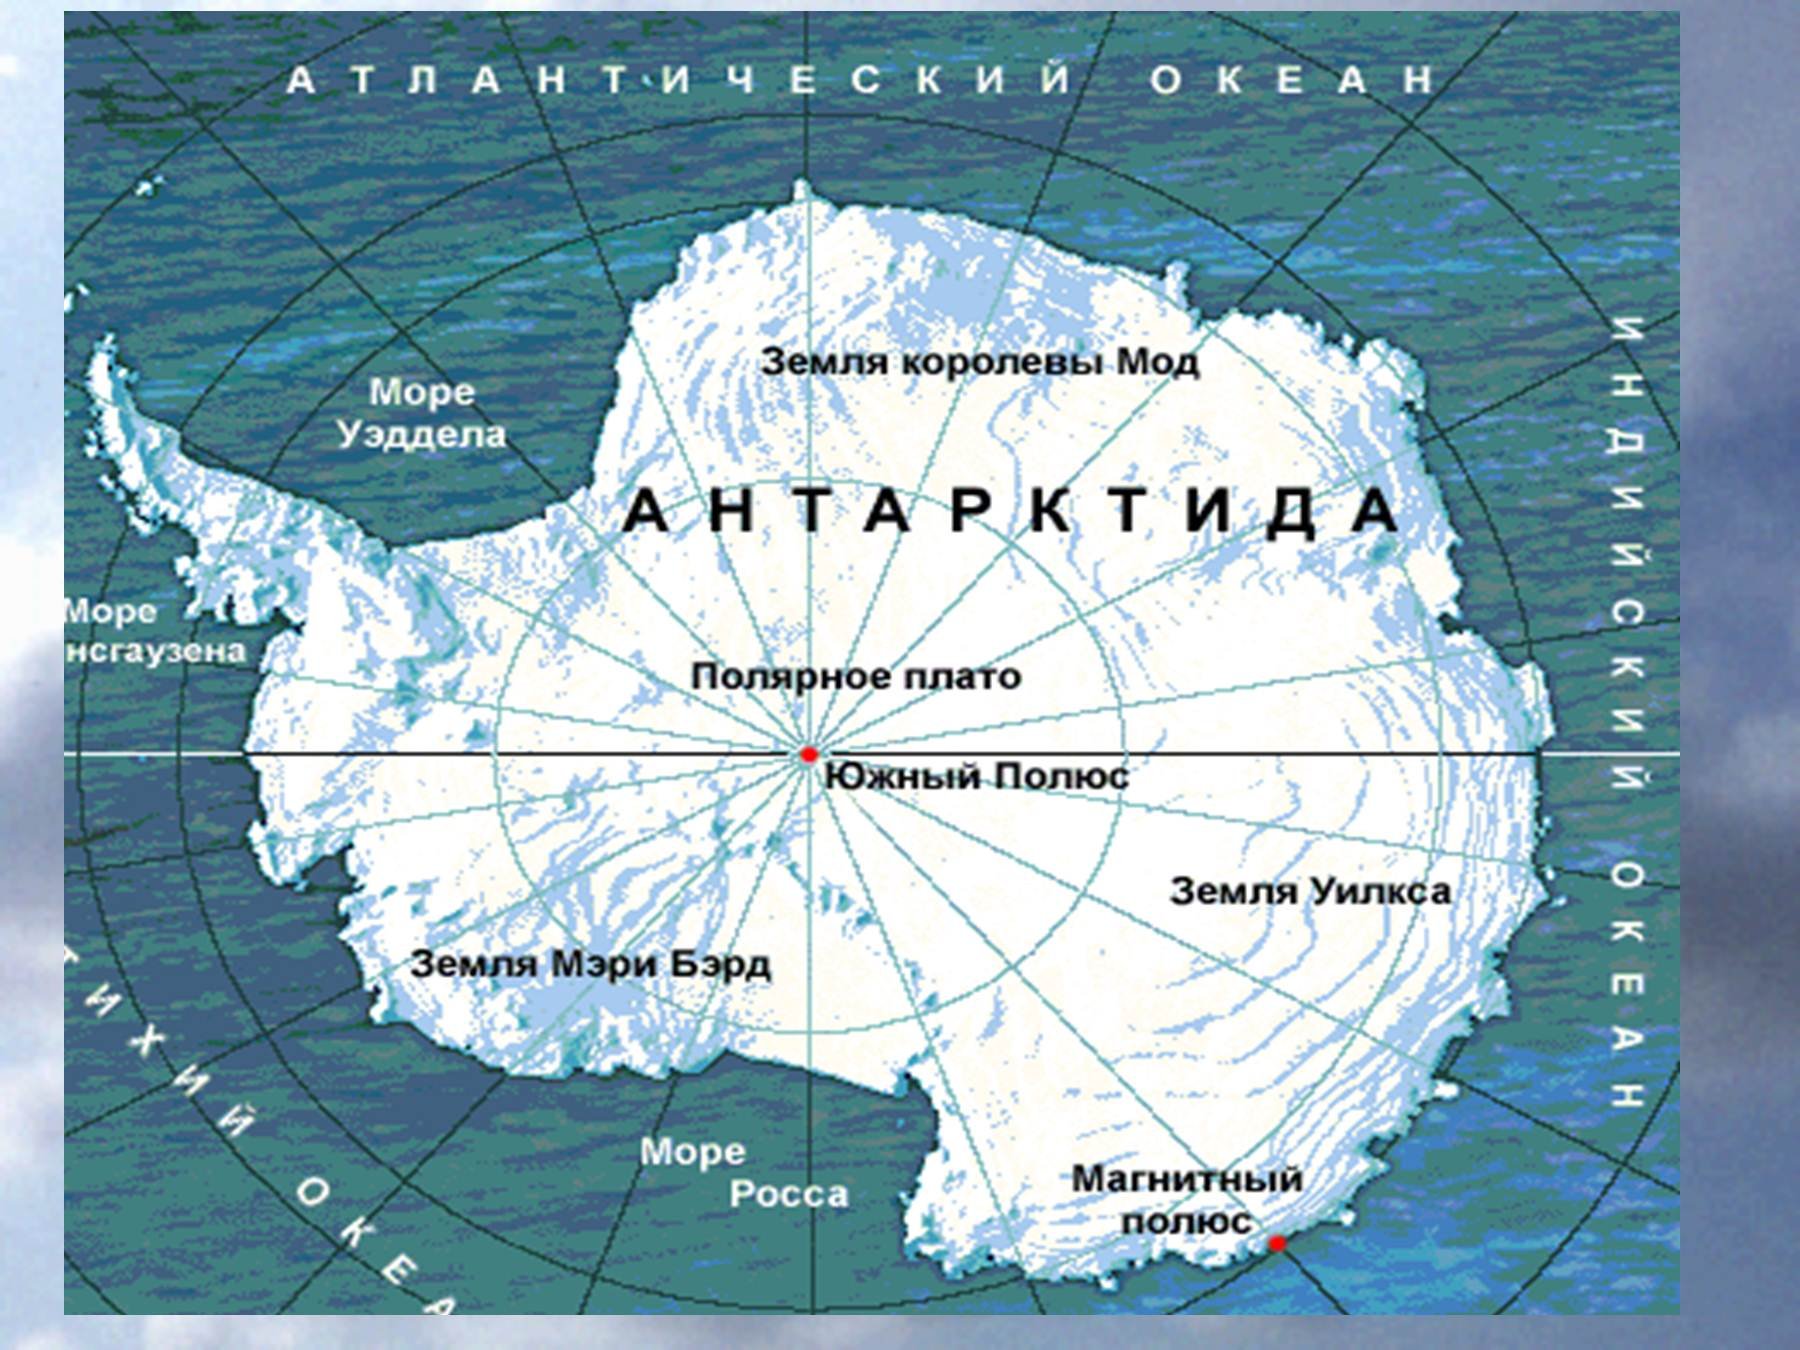 Местоположение антарктиды. Карта Антарктиды моря омывающие Антарктиду. Антарктида моря Росса Уэдделла Беллинсгаузена Амундсена. Моря: Амундсена, Беллинсгаузена, Росса, Уэдделла..